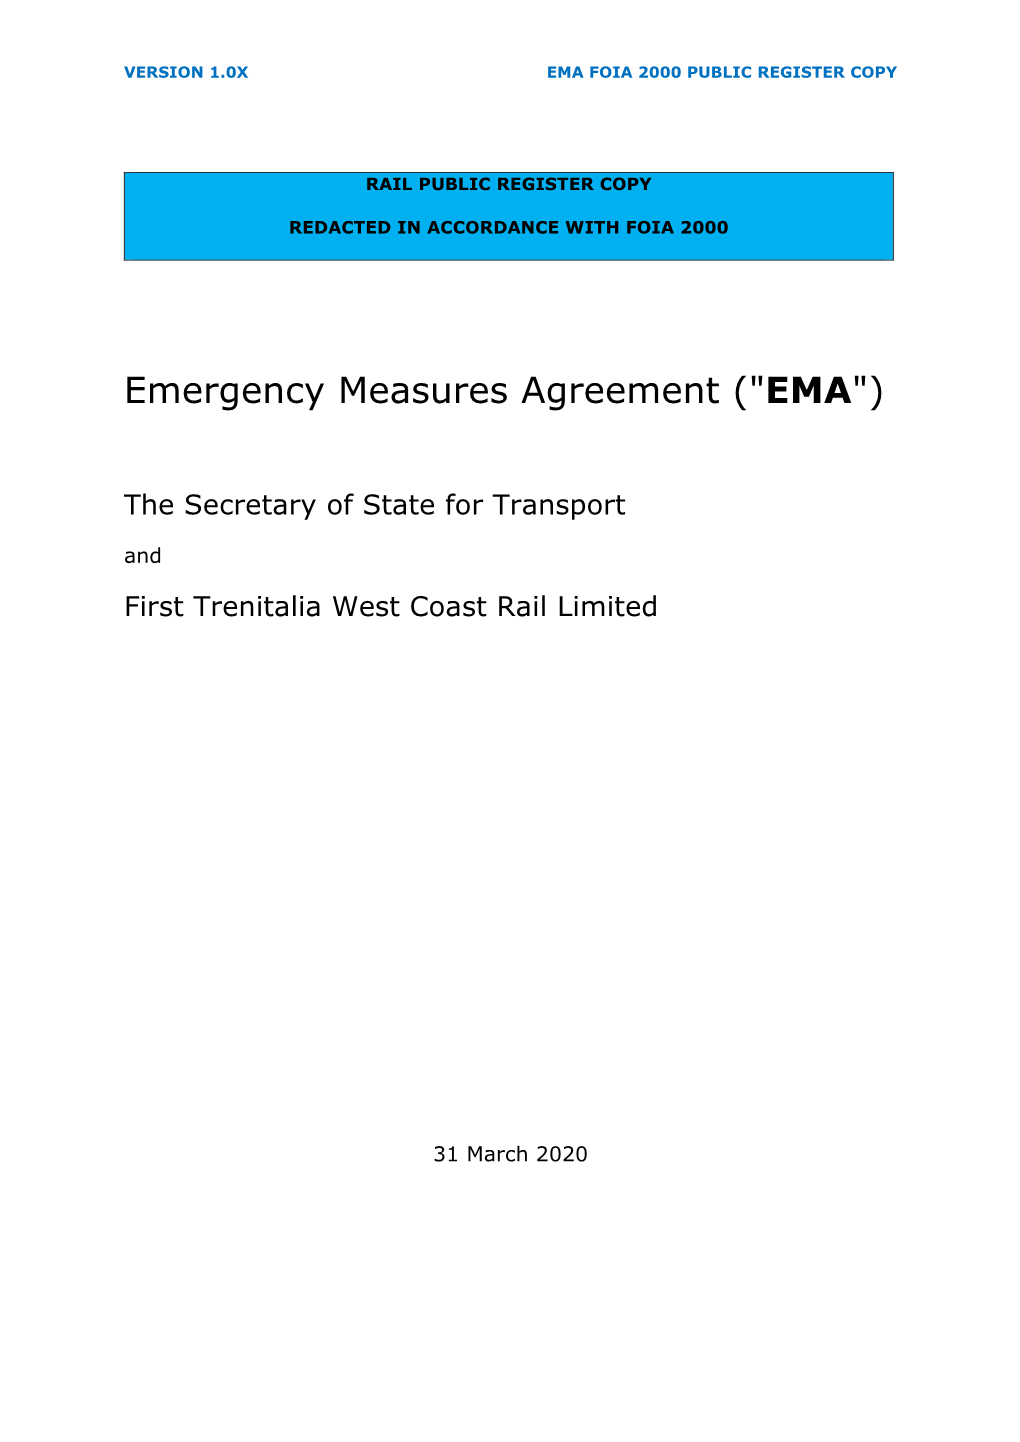 West Coast Partnership Franchise Emergency Measures Agreement